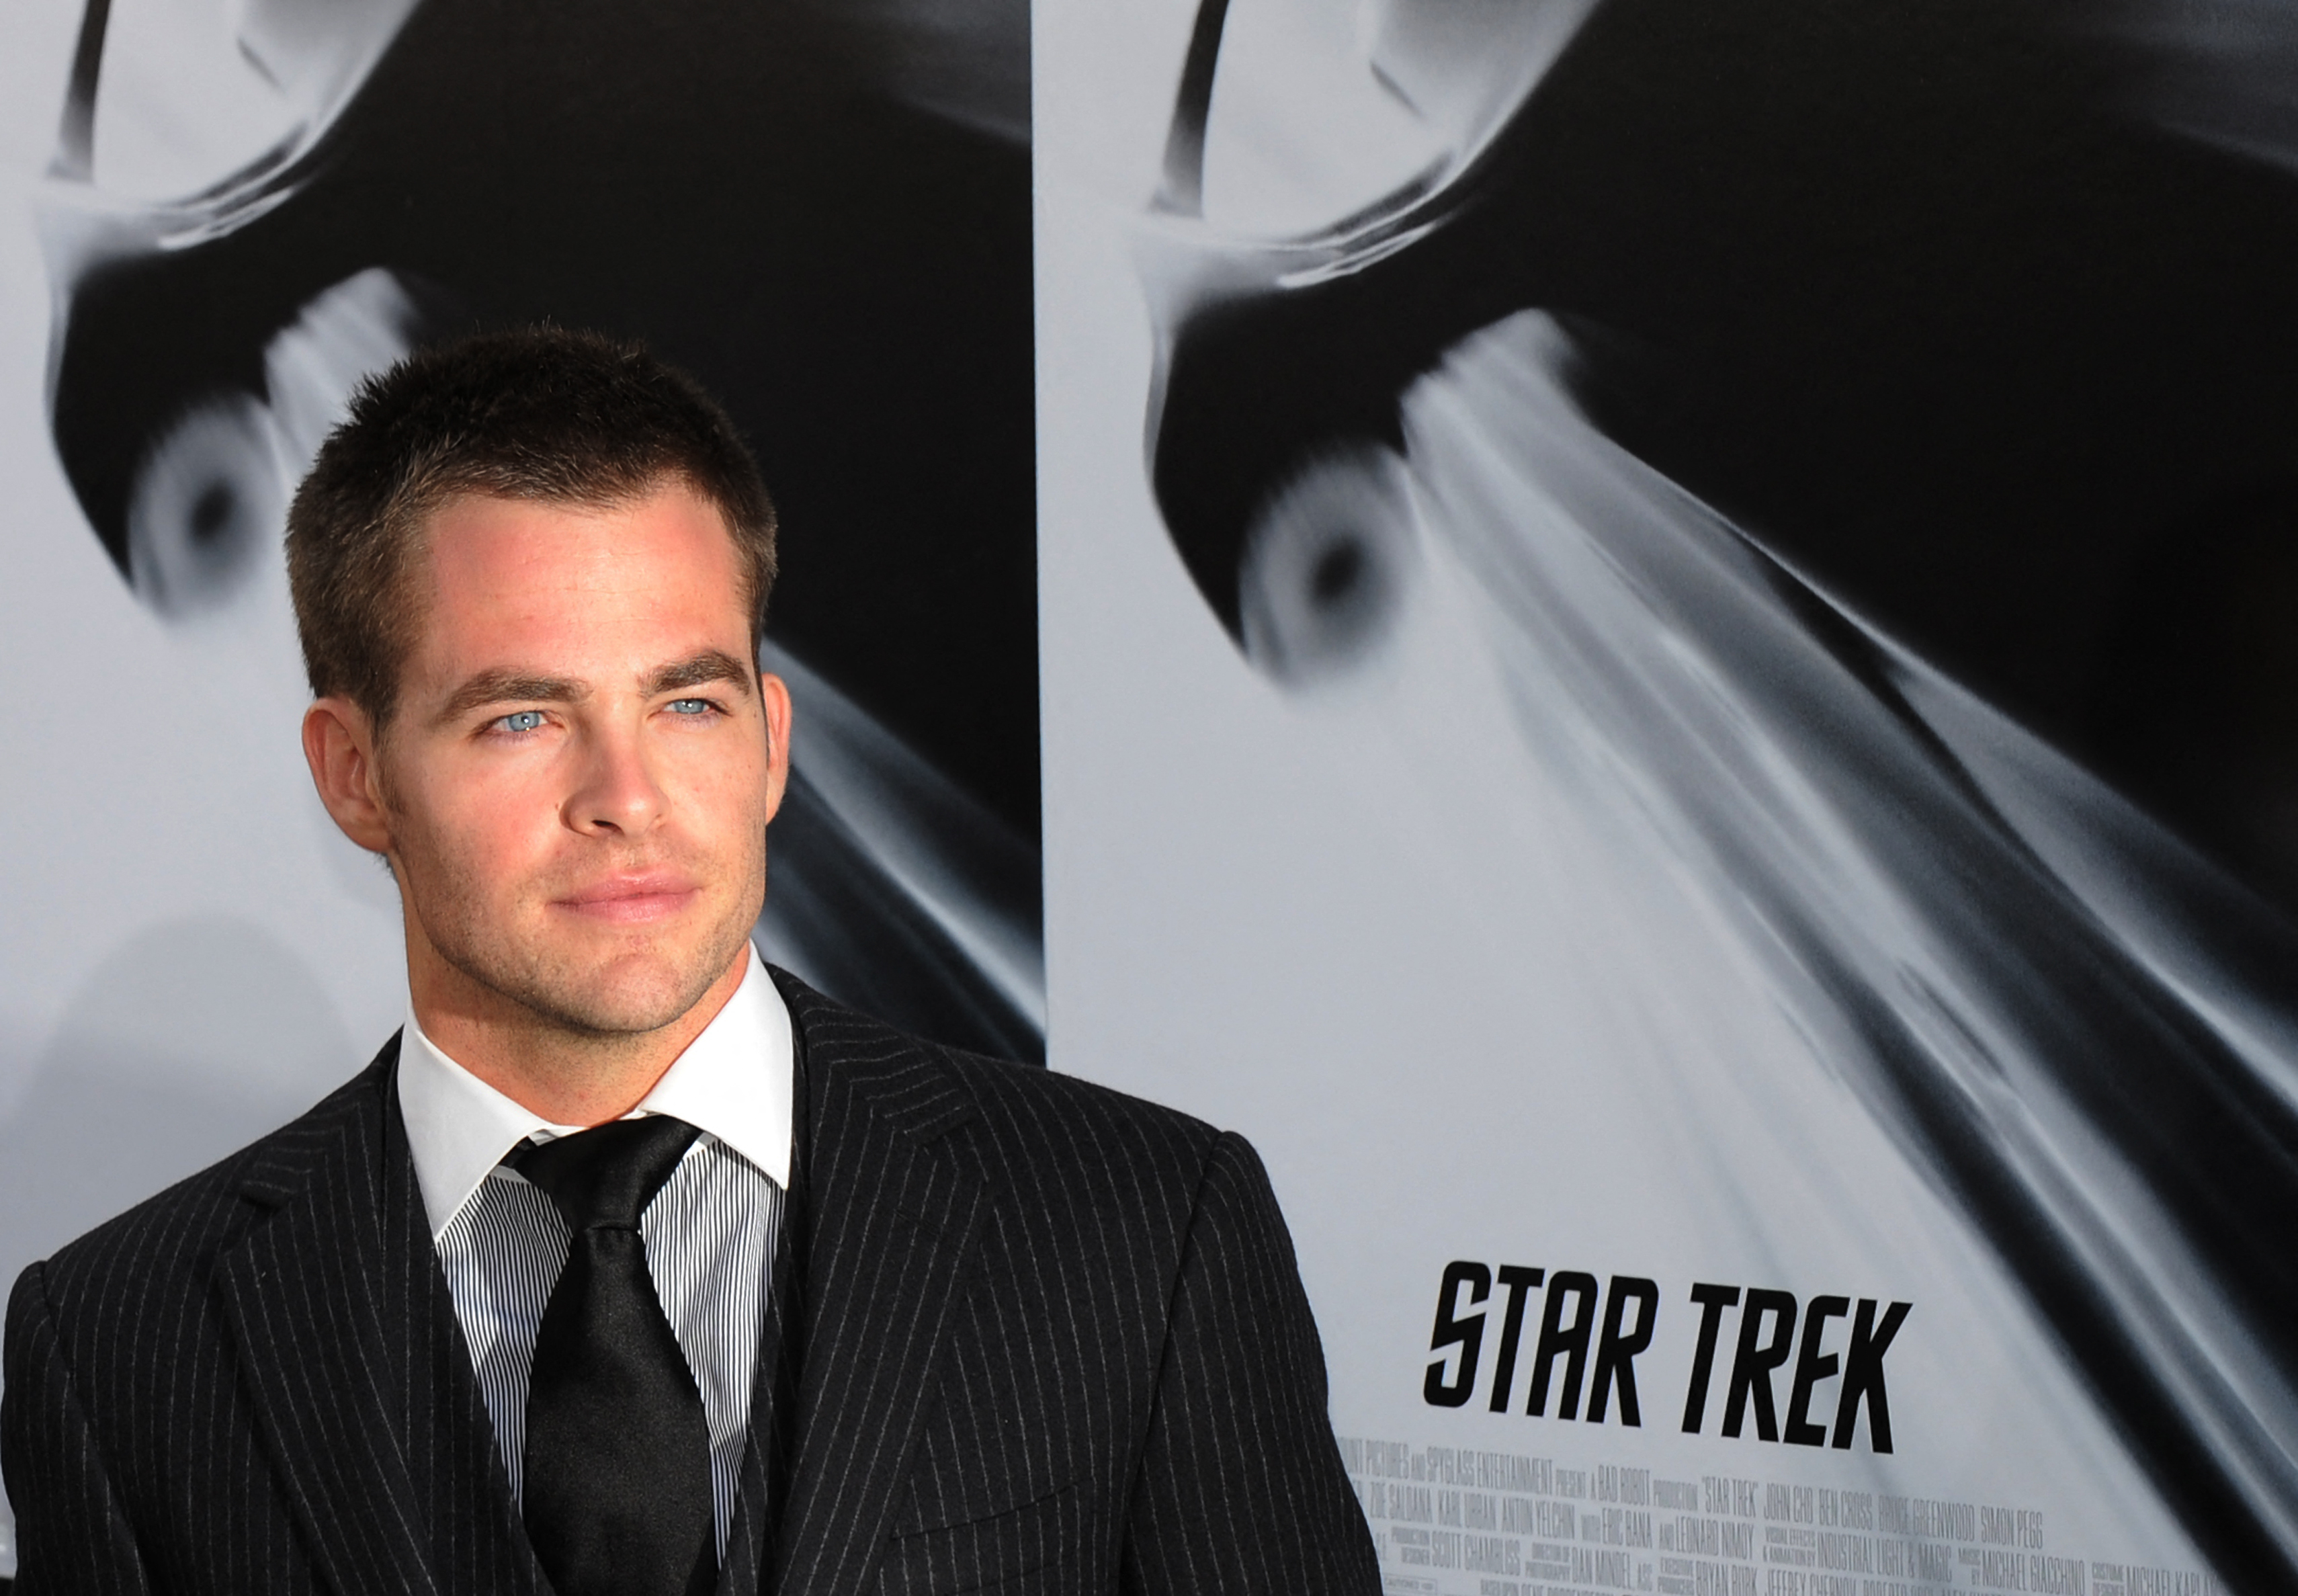 El actor en el estreno de "Star Trek" en Los Ángeles el 30 de abril de 2009 | Fuente: Getty Images